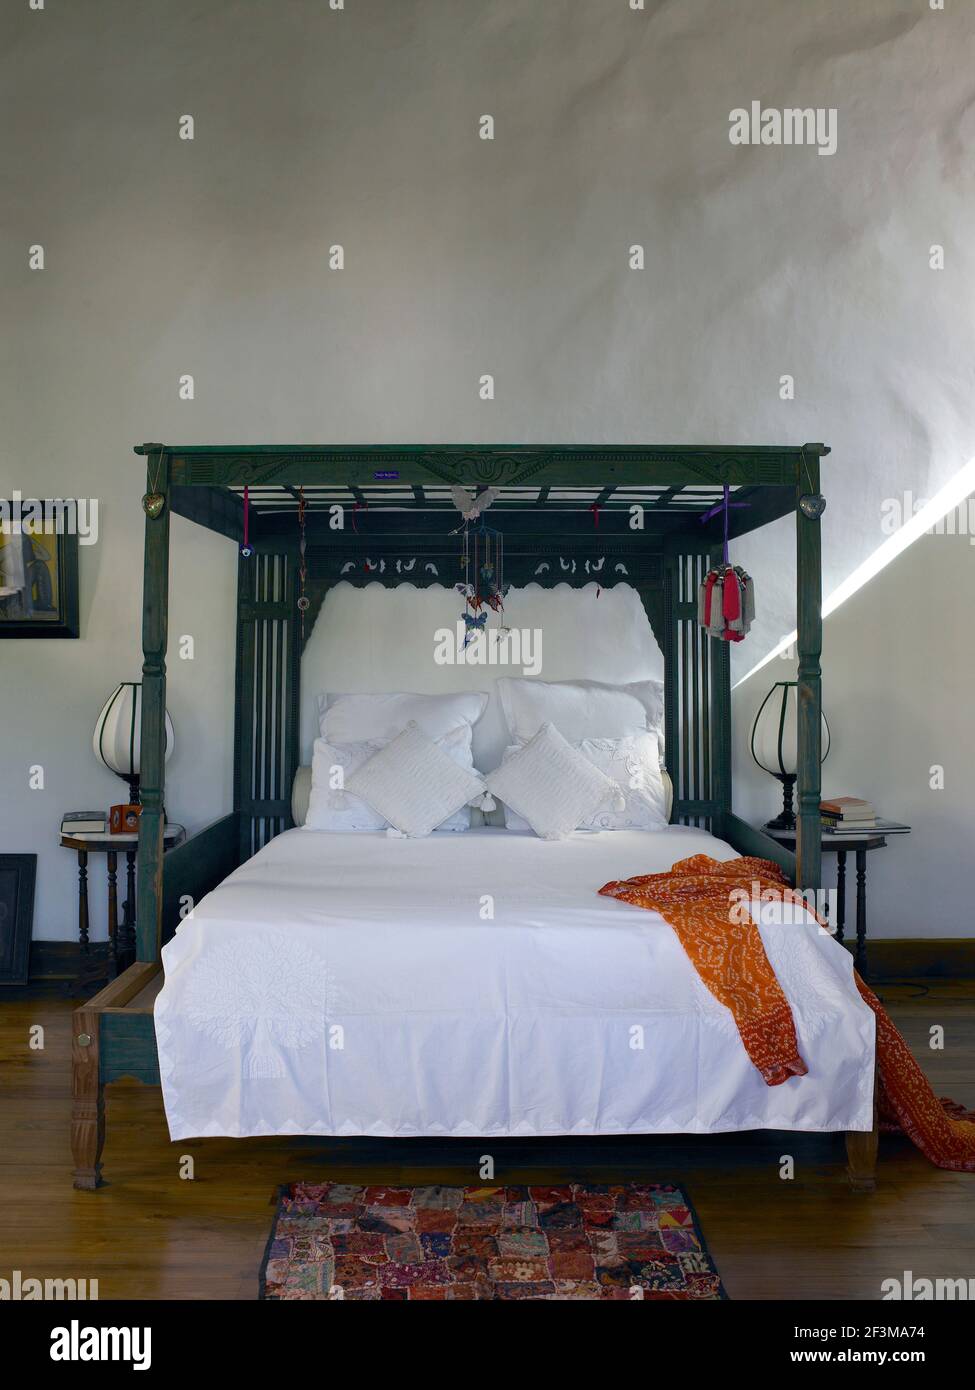 Schlafzimmer mit Holz gerahmte Himmelbett in Wohnheim in Sri Lanka  Stockfotografie - Alamy